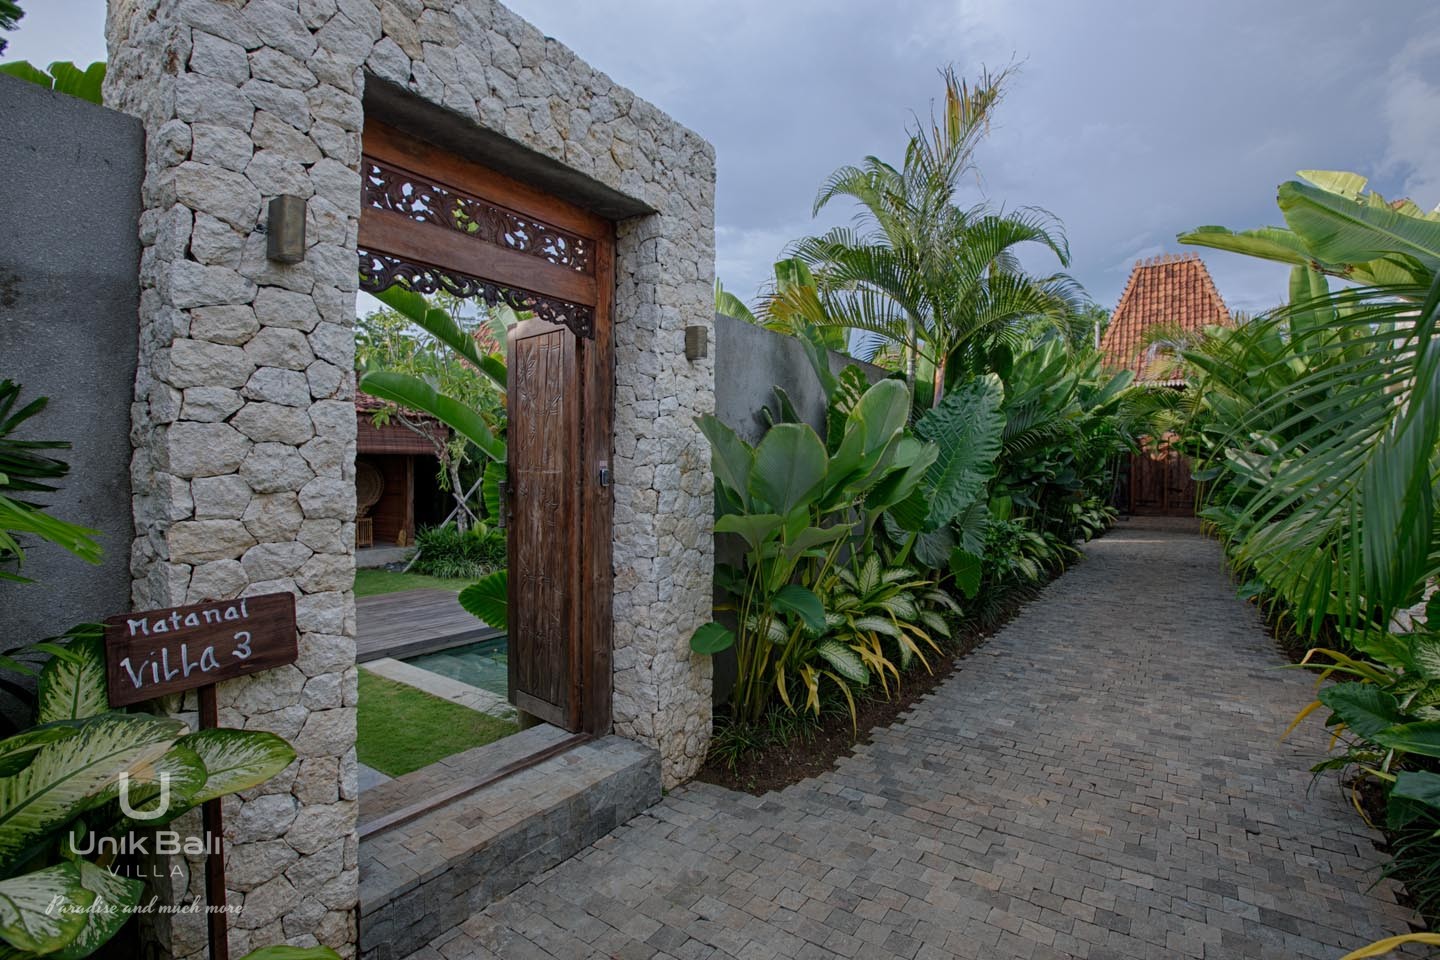 Matanai Villa 3 Gate(opened)